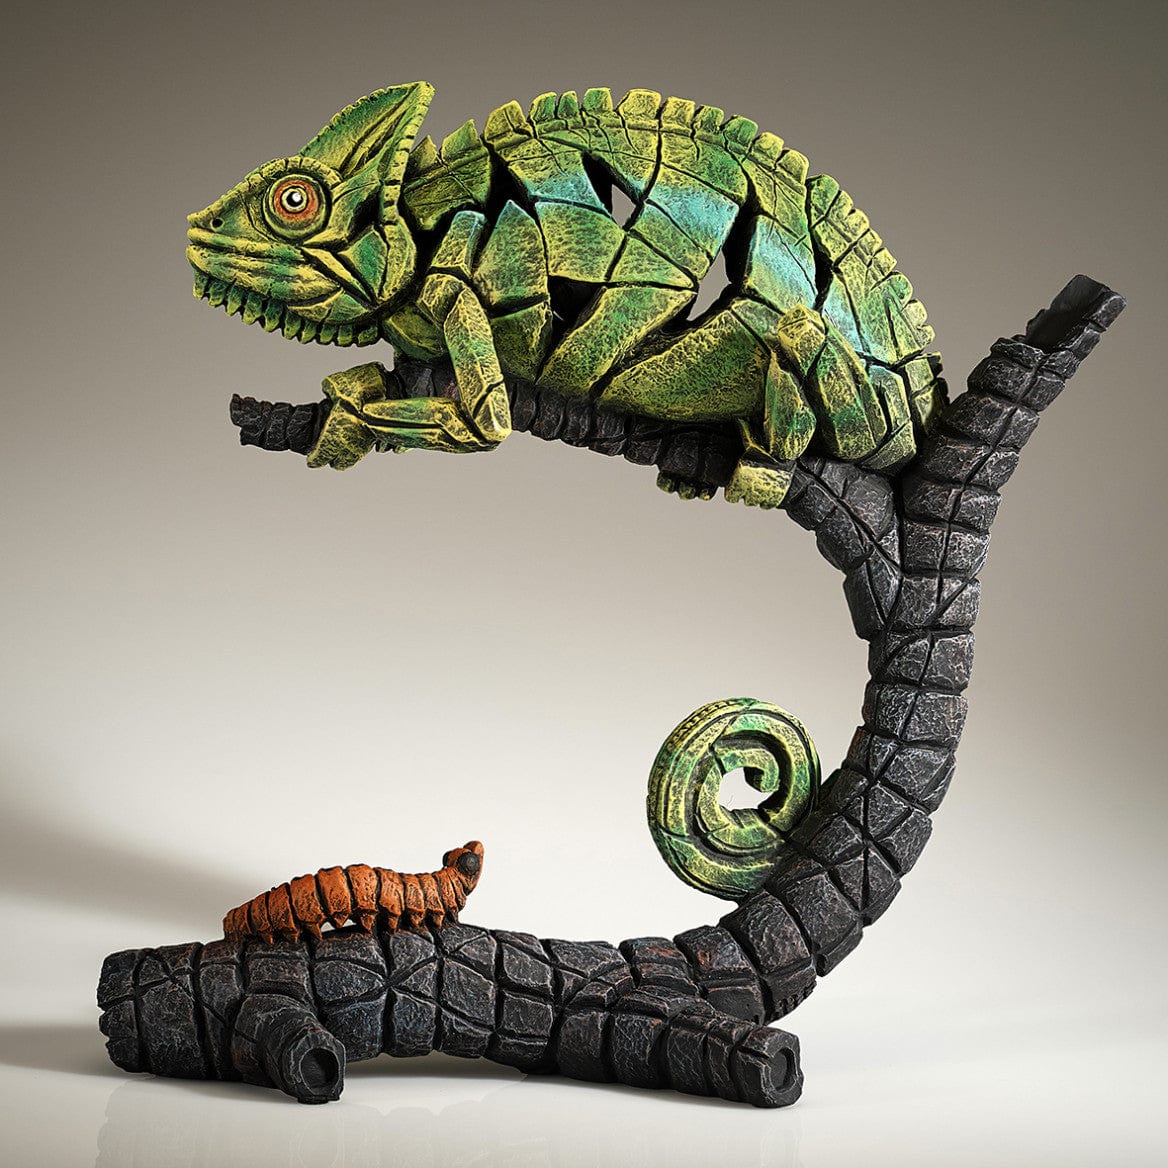 The Lair Iguana and Caterpillar Edge Sculpture